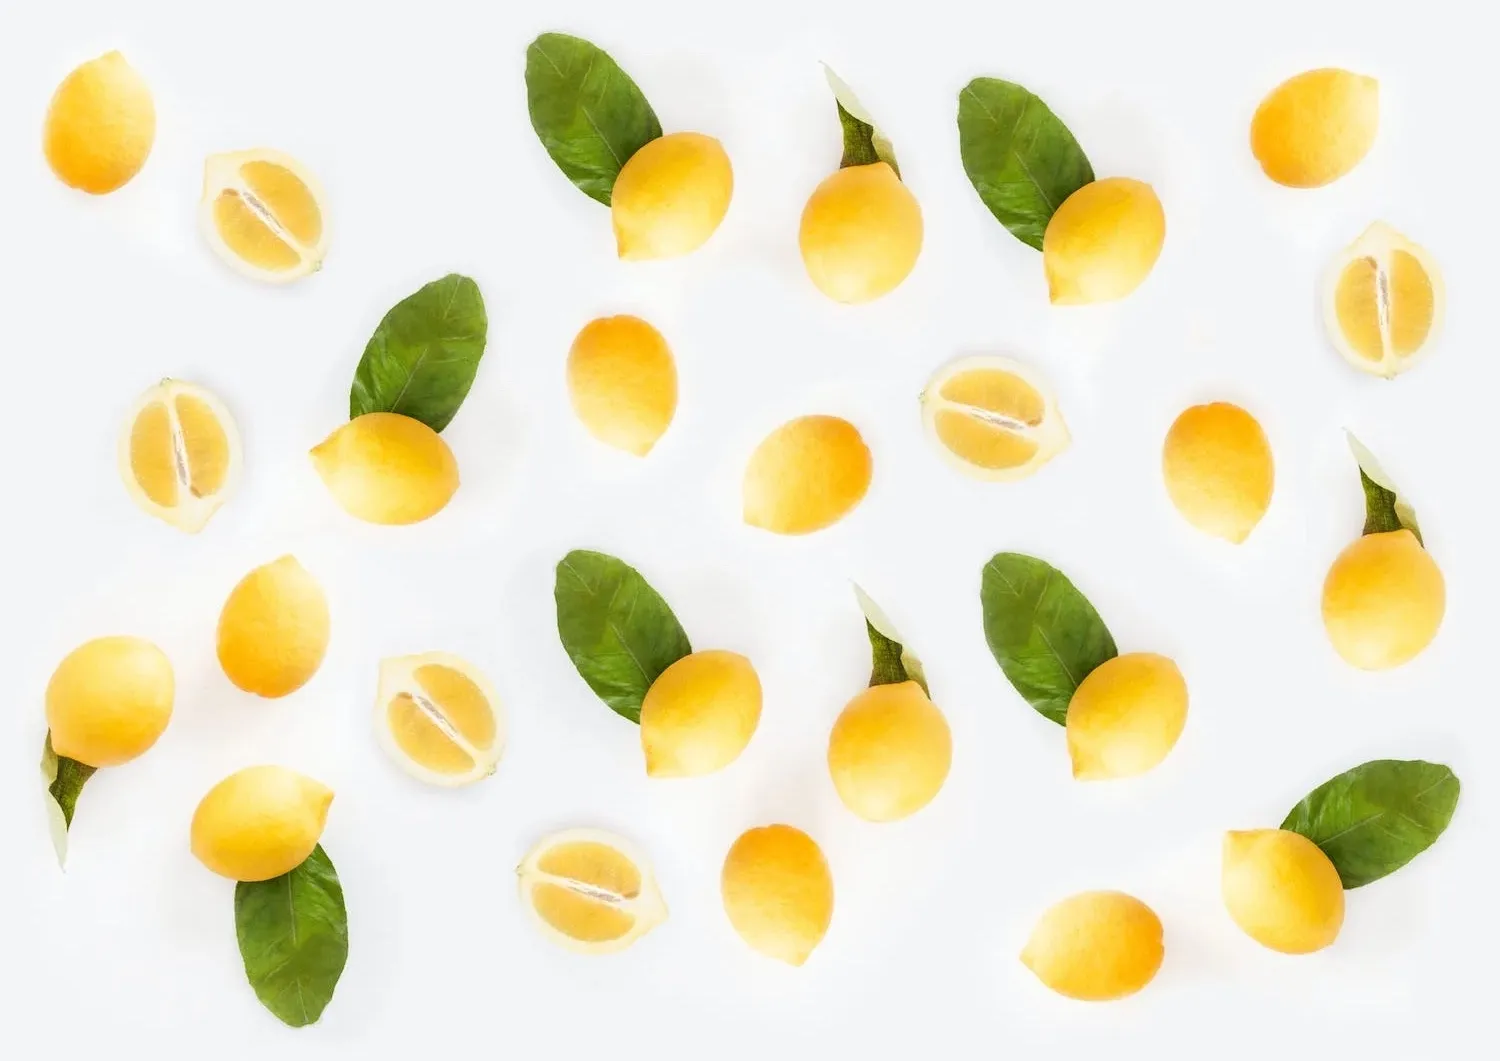 lemons on white table